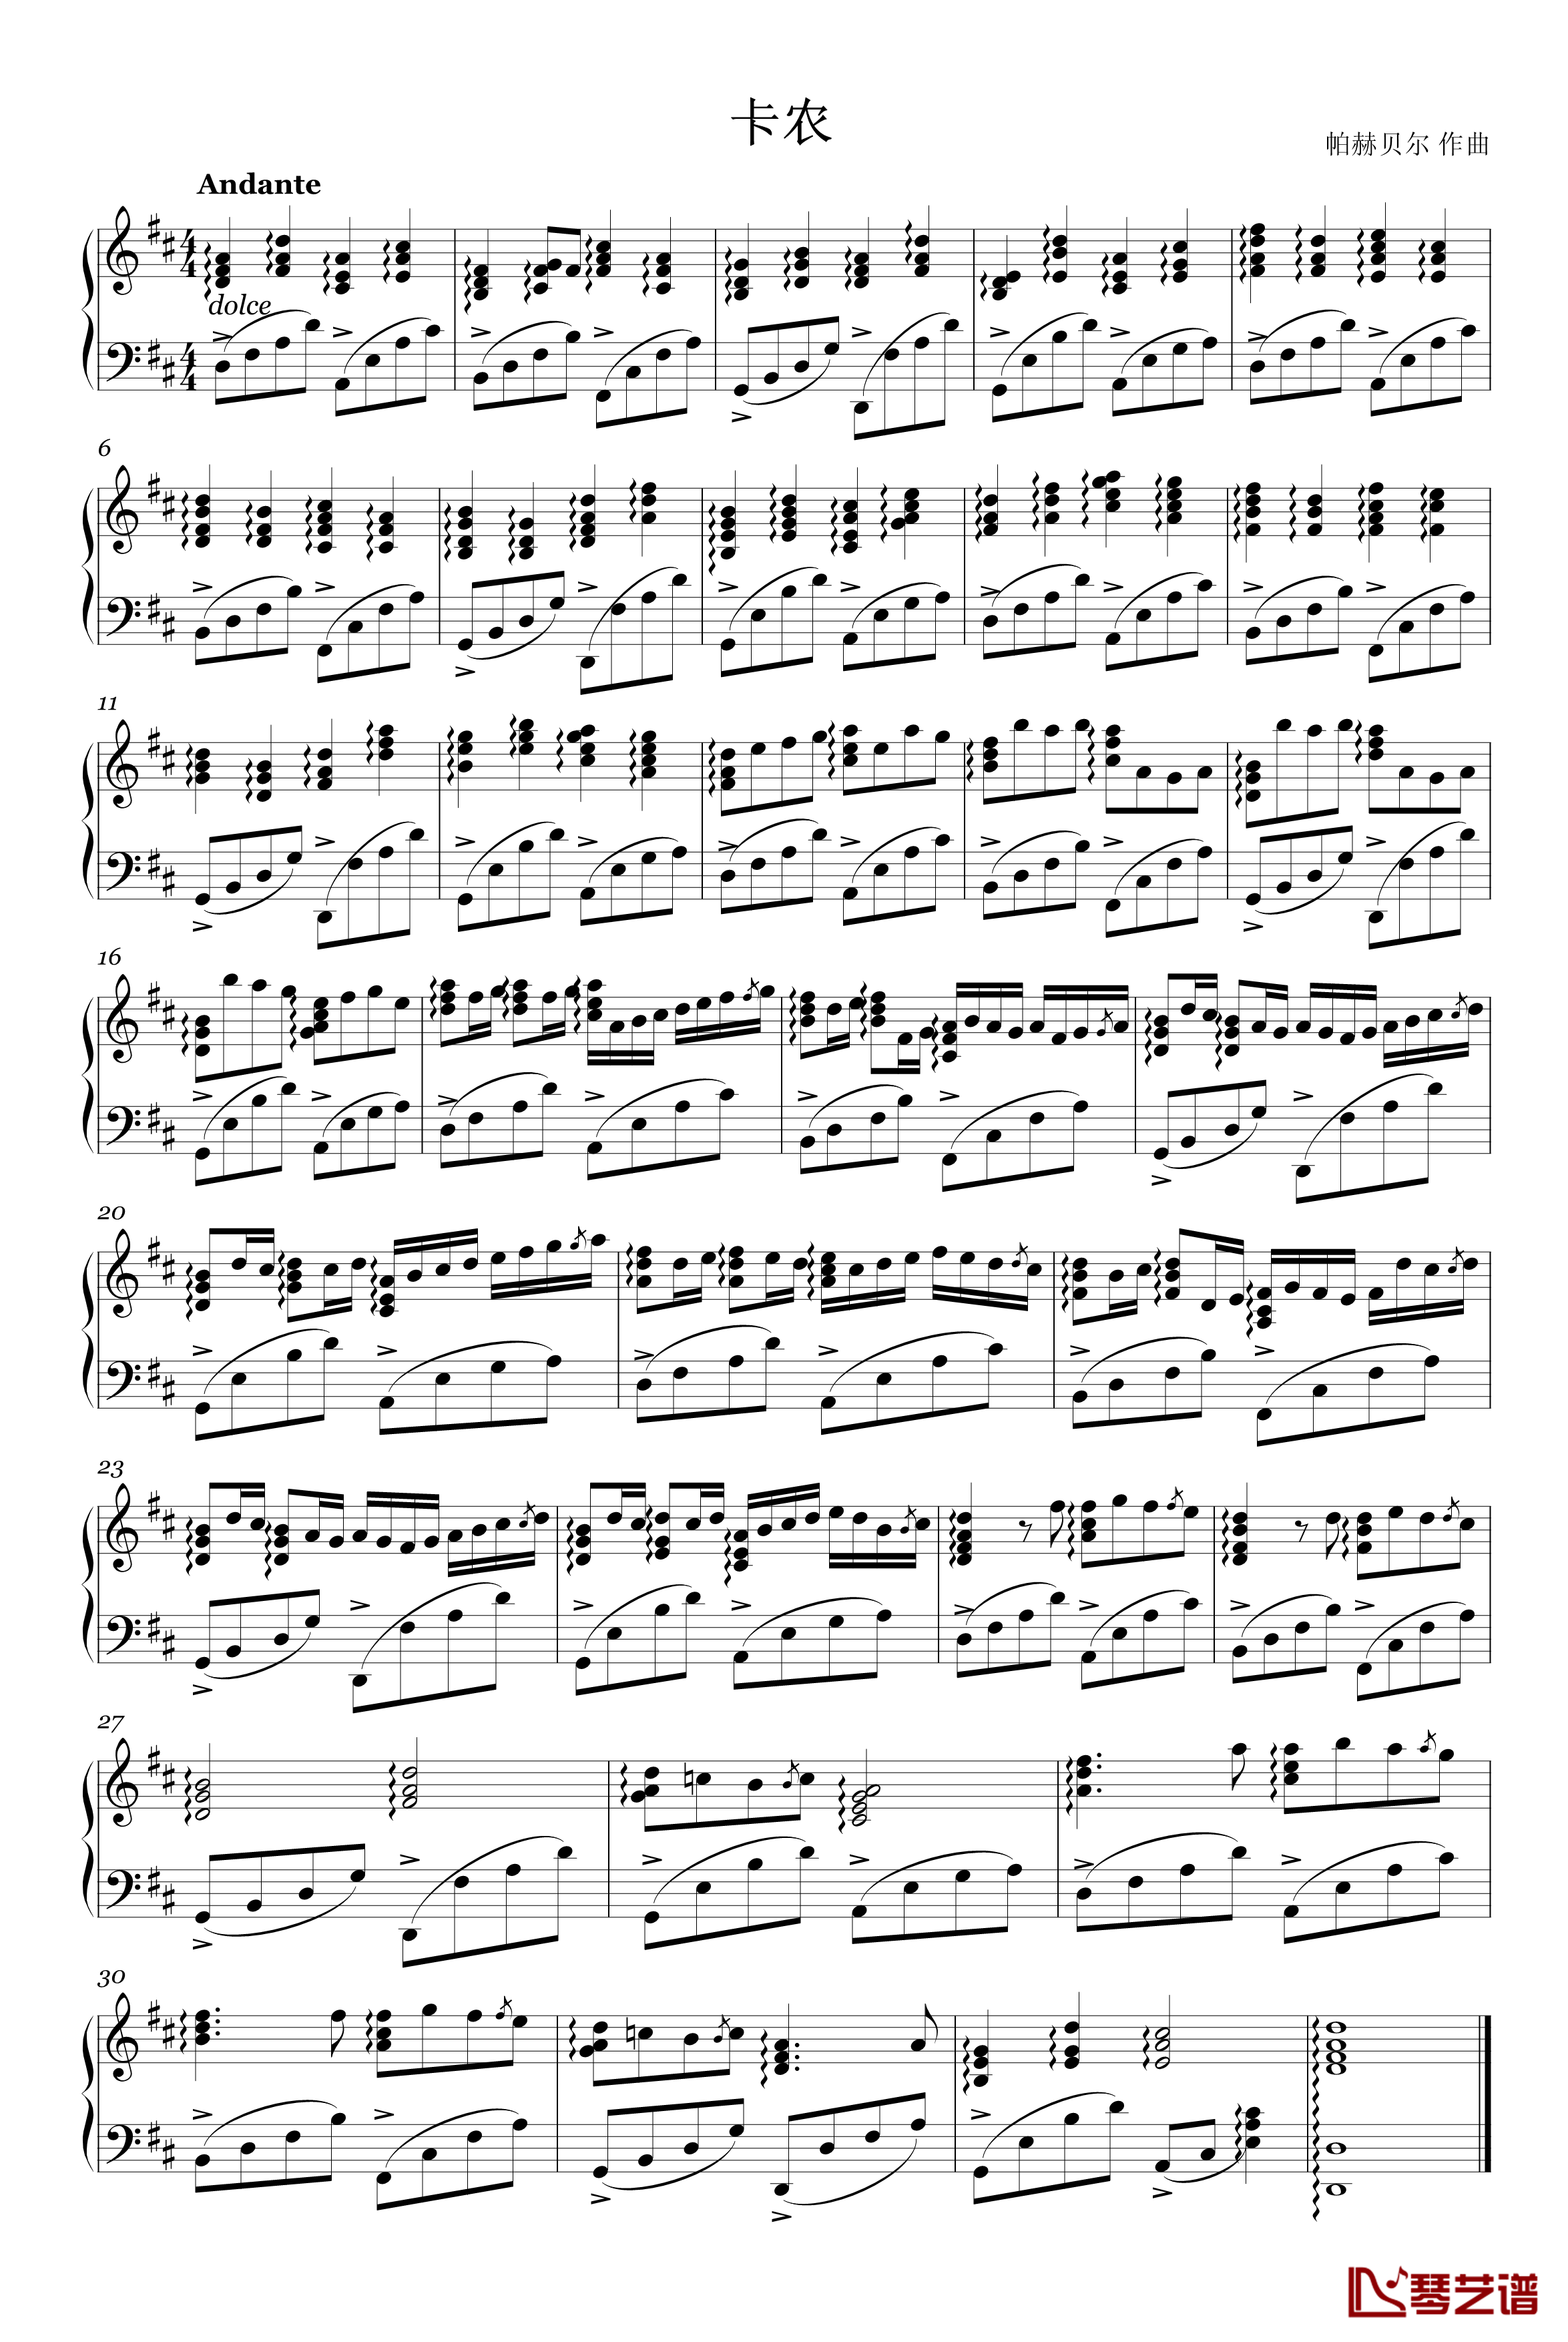 竖琴版卡农钢琴谱-帕赫贝尔-Pachelbel1